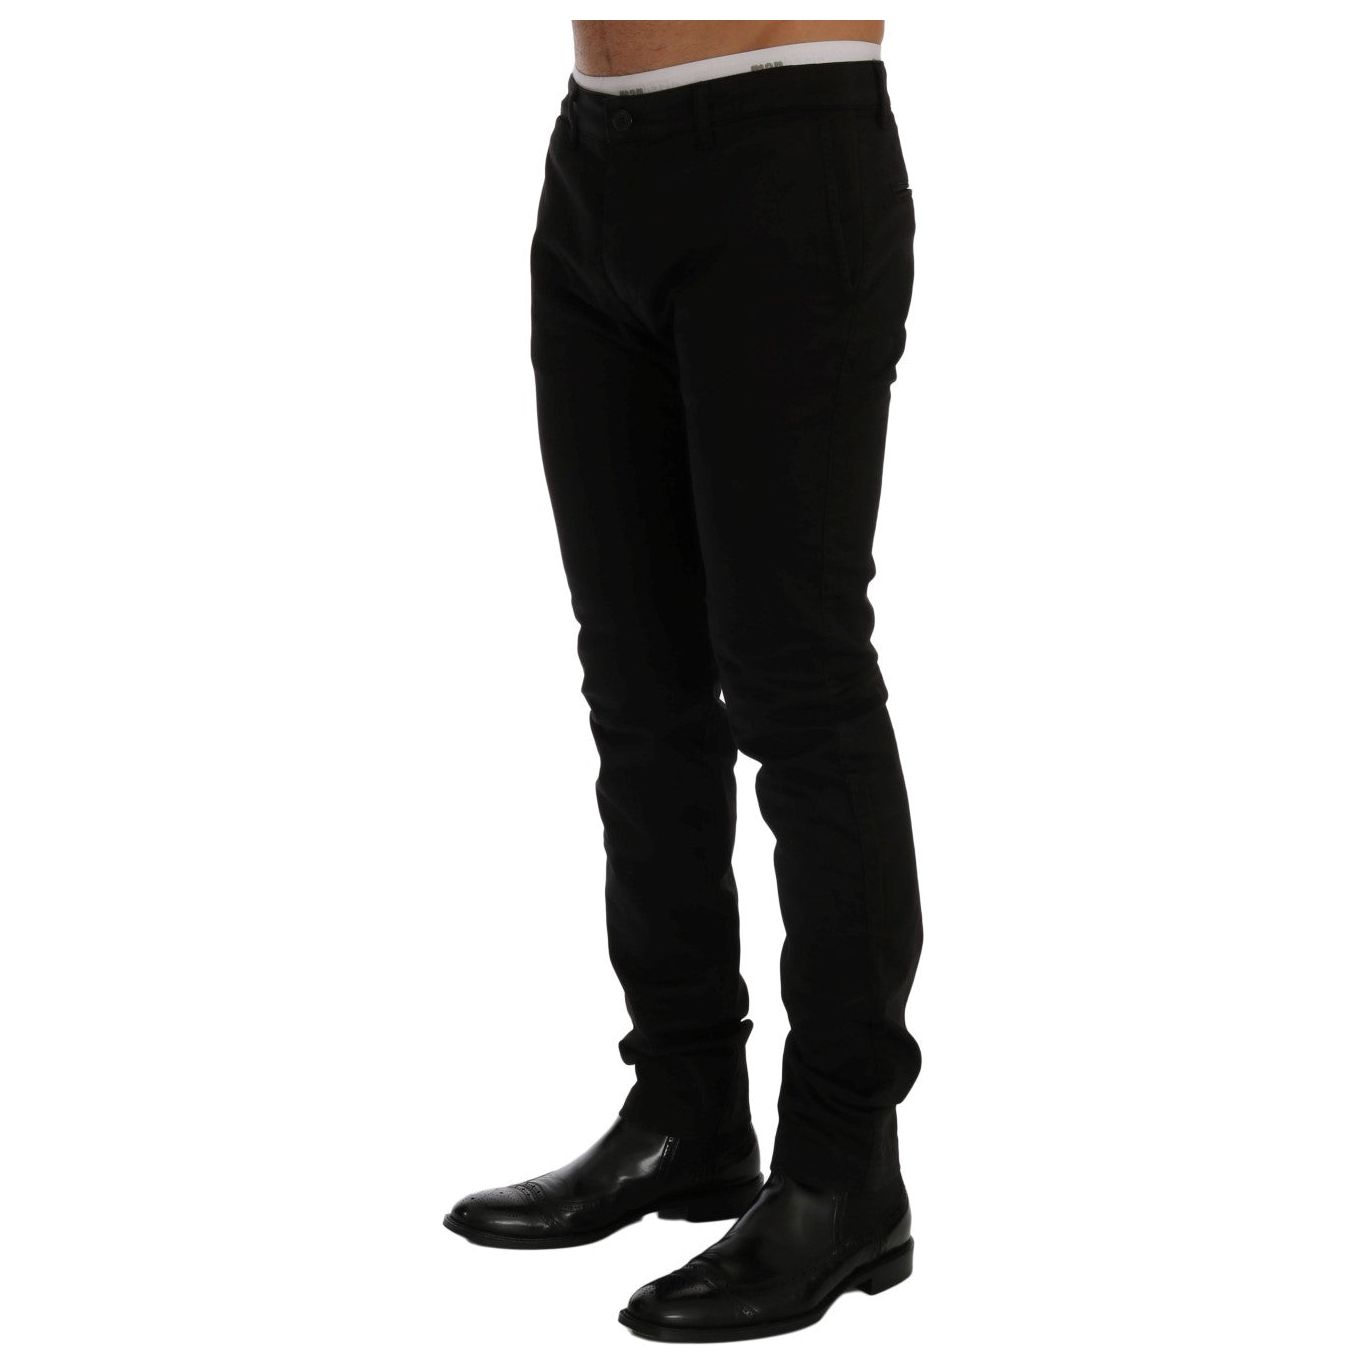 Jeans & Pants Elegant Slim Fit Black Cotton Trousers GF Ferre